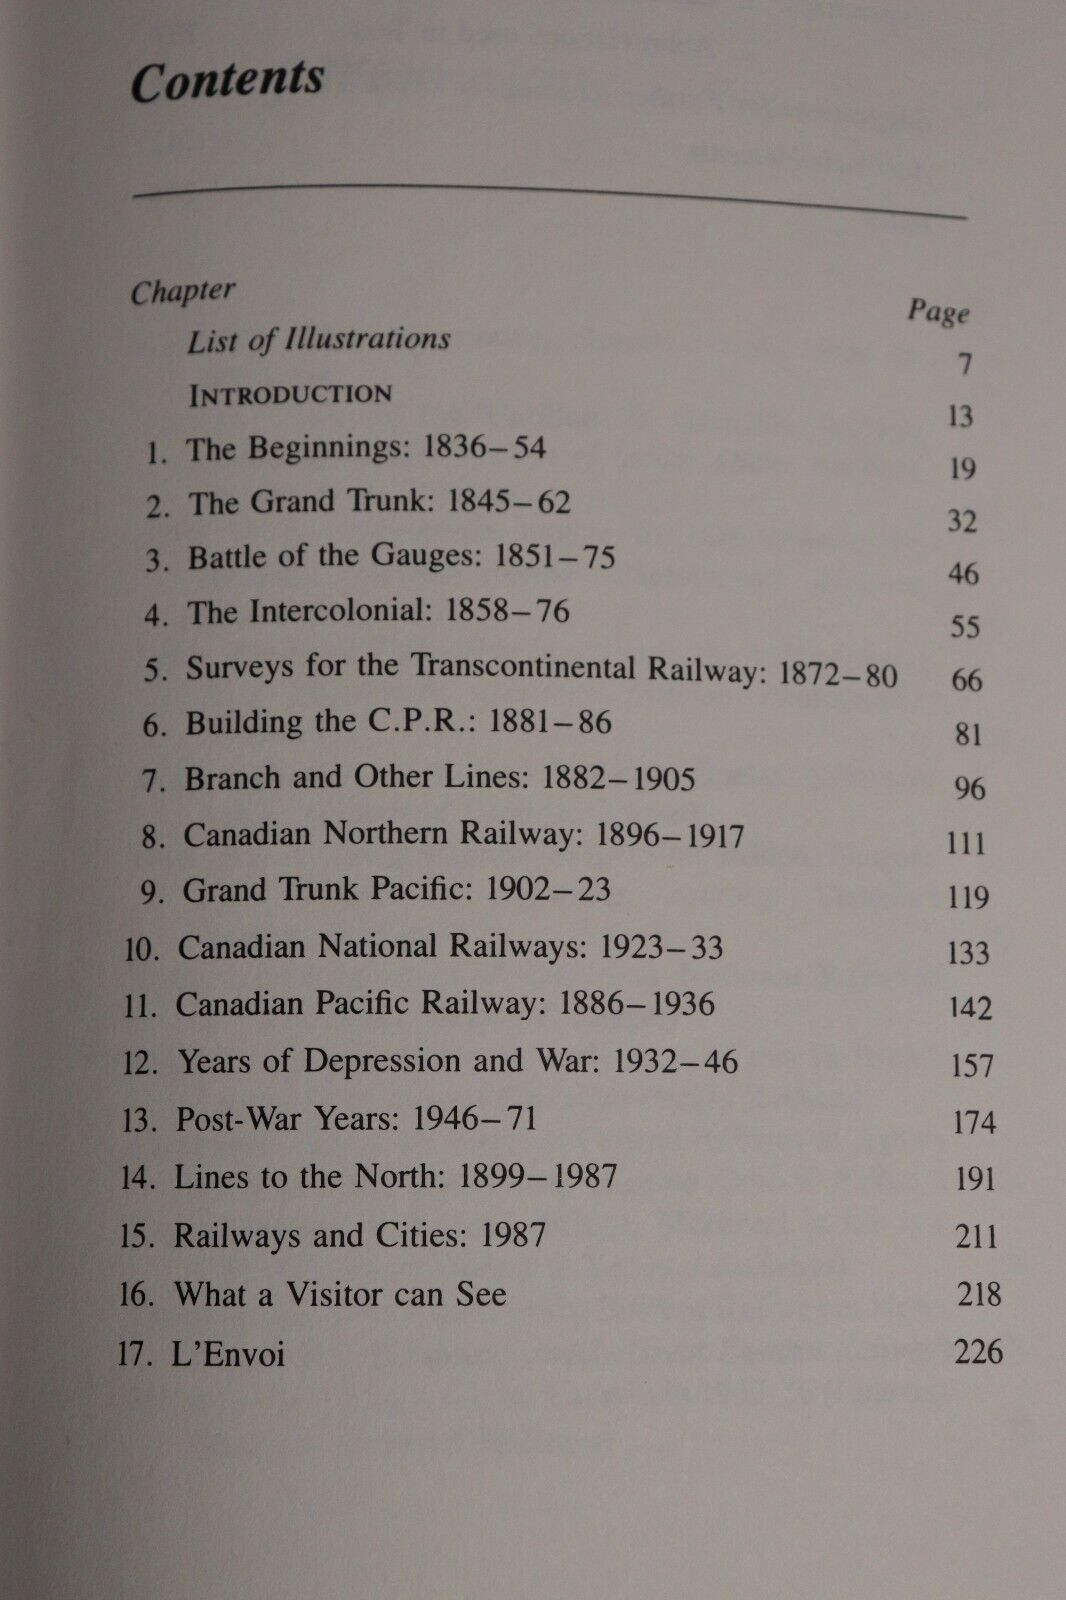 Railways of Canada by R Legget - 1987 - Canadian Railway History Book